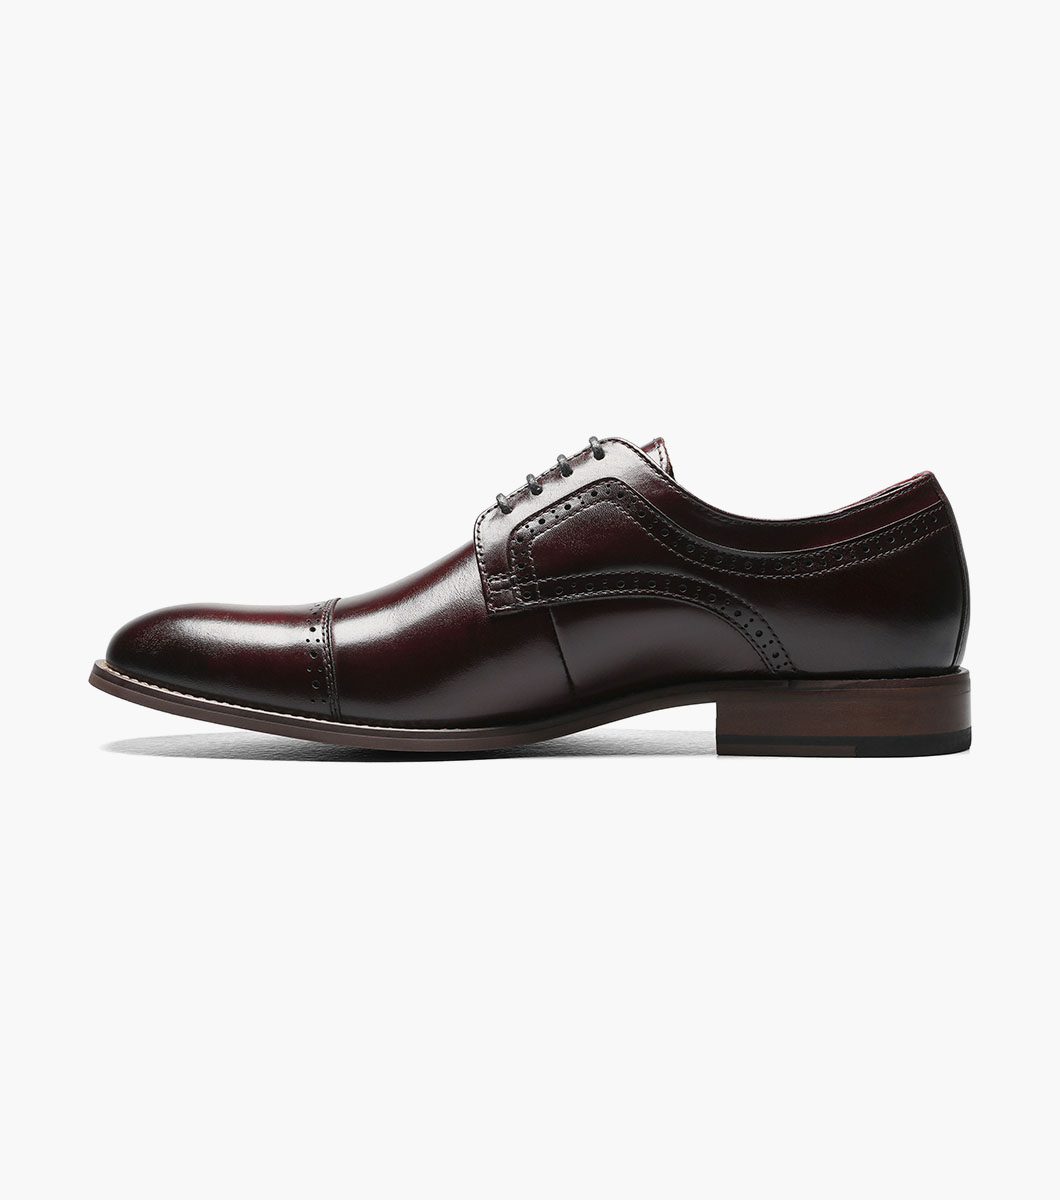 Dickinson Cap Toe Oxford All Mens Shoes | Stacyadams.com